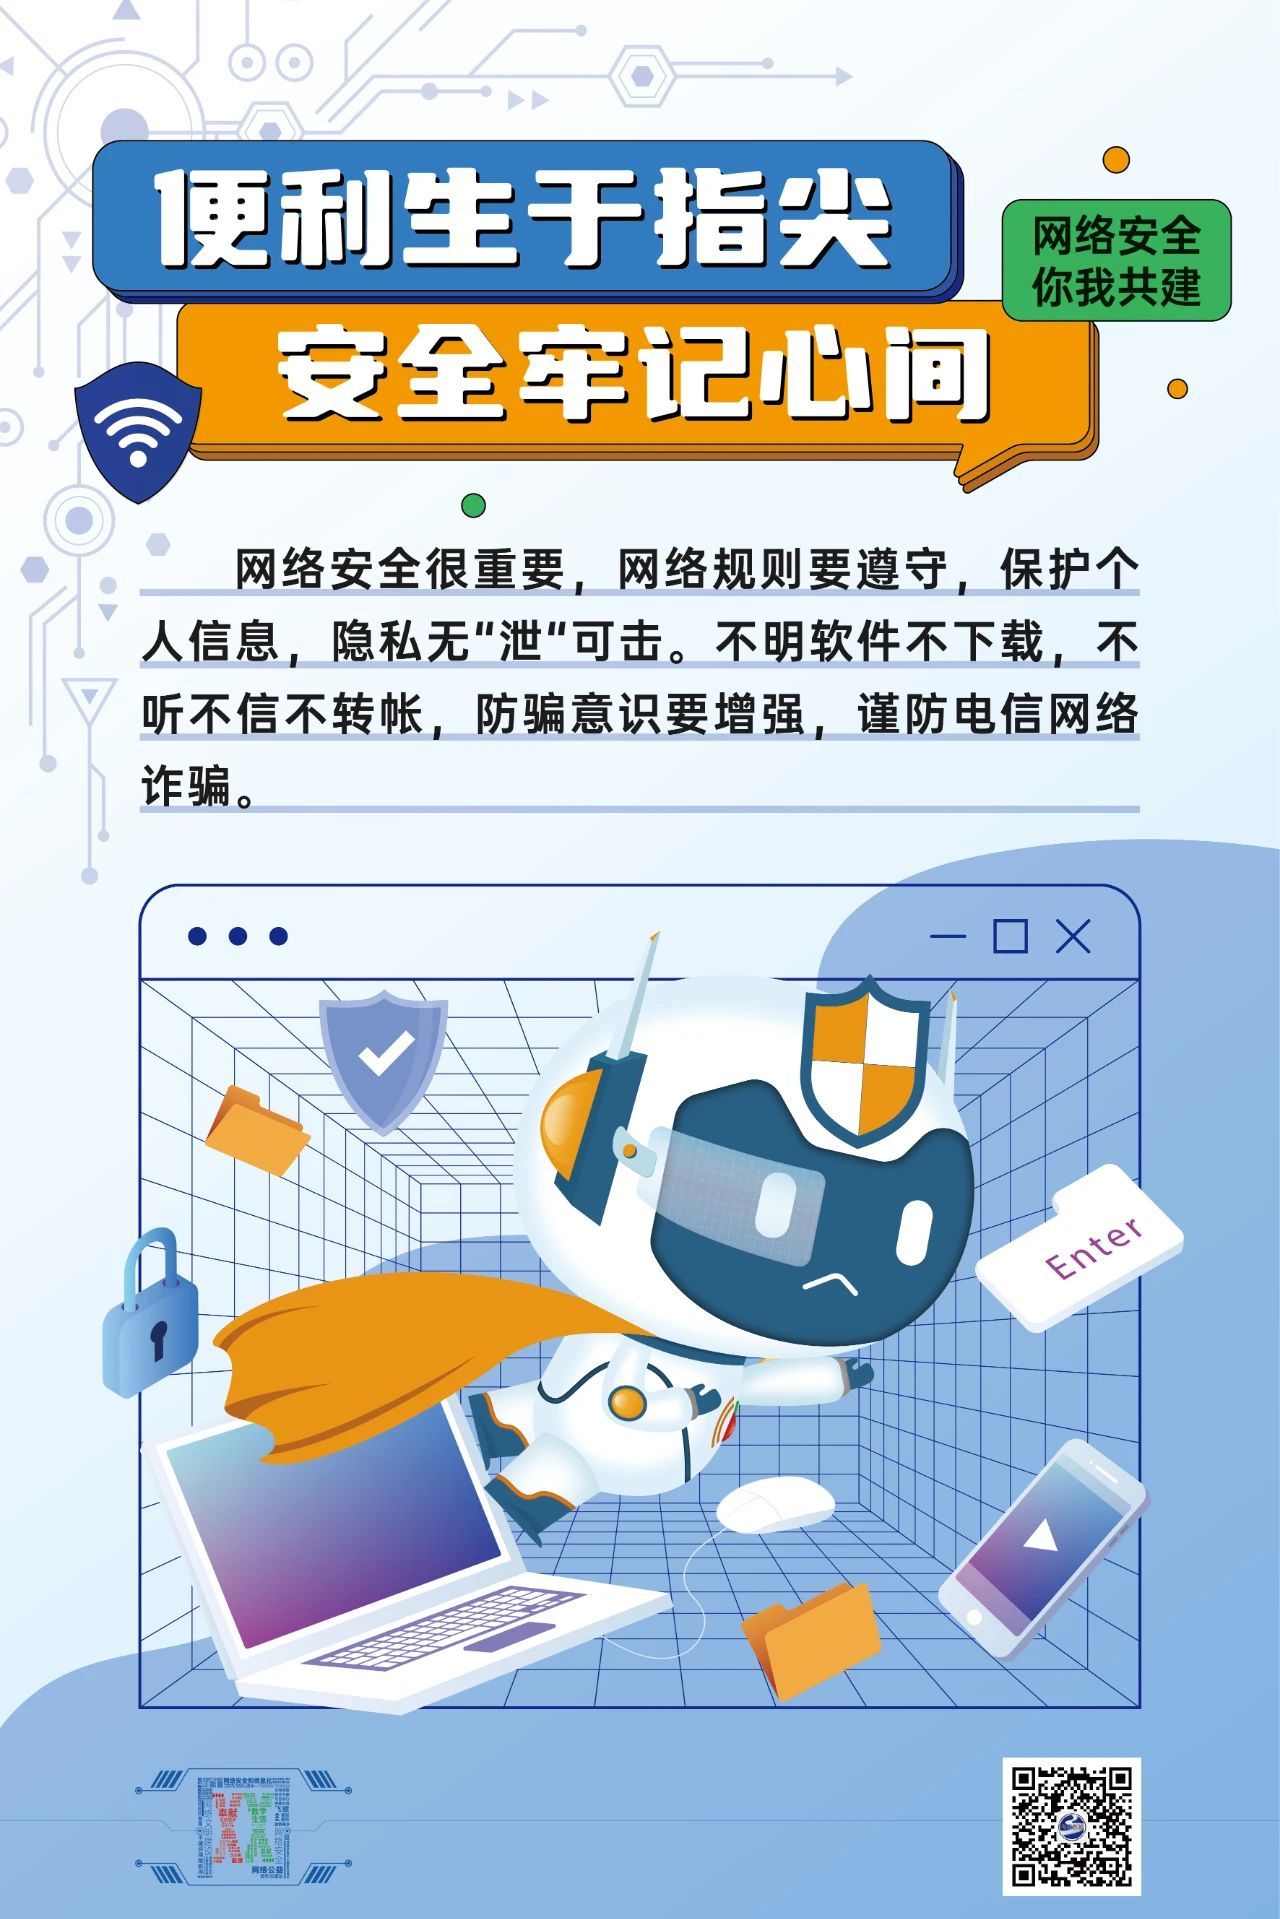 网络文明海报丨汉小e提示您网络安全你我共建